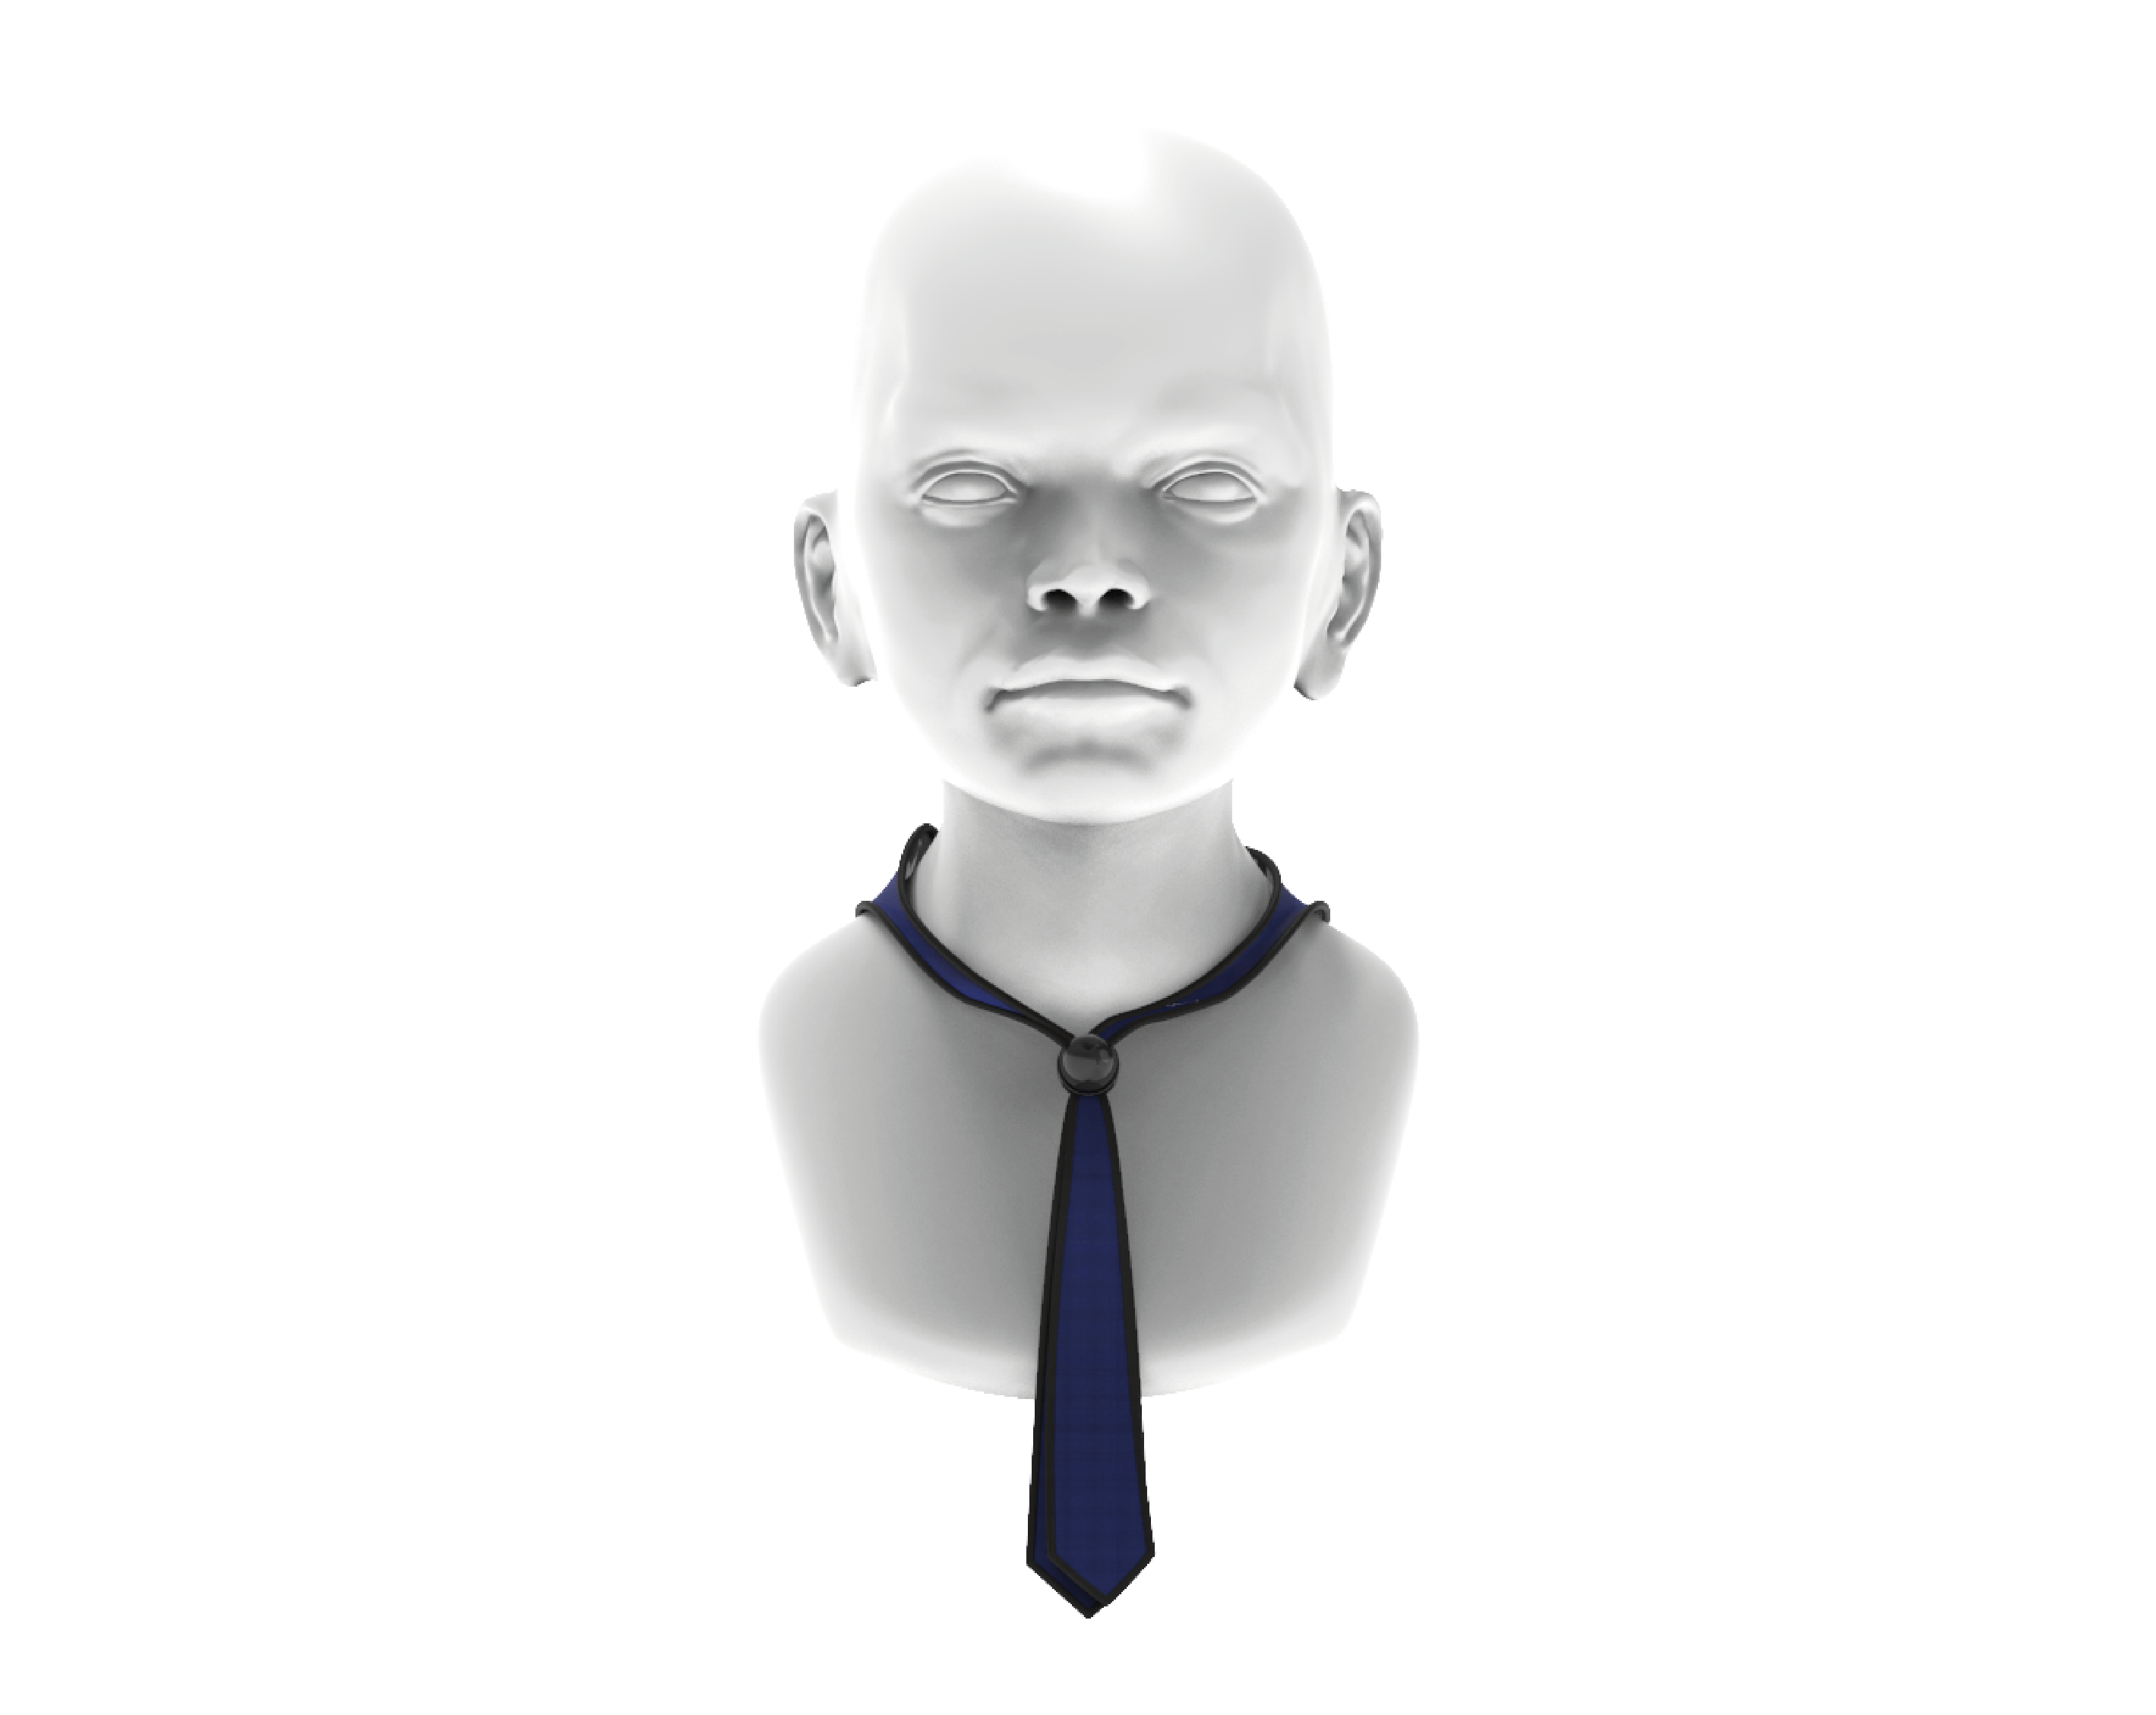 Mannequin wearing neck tie.